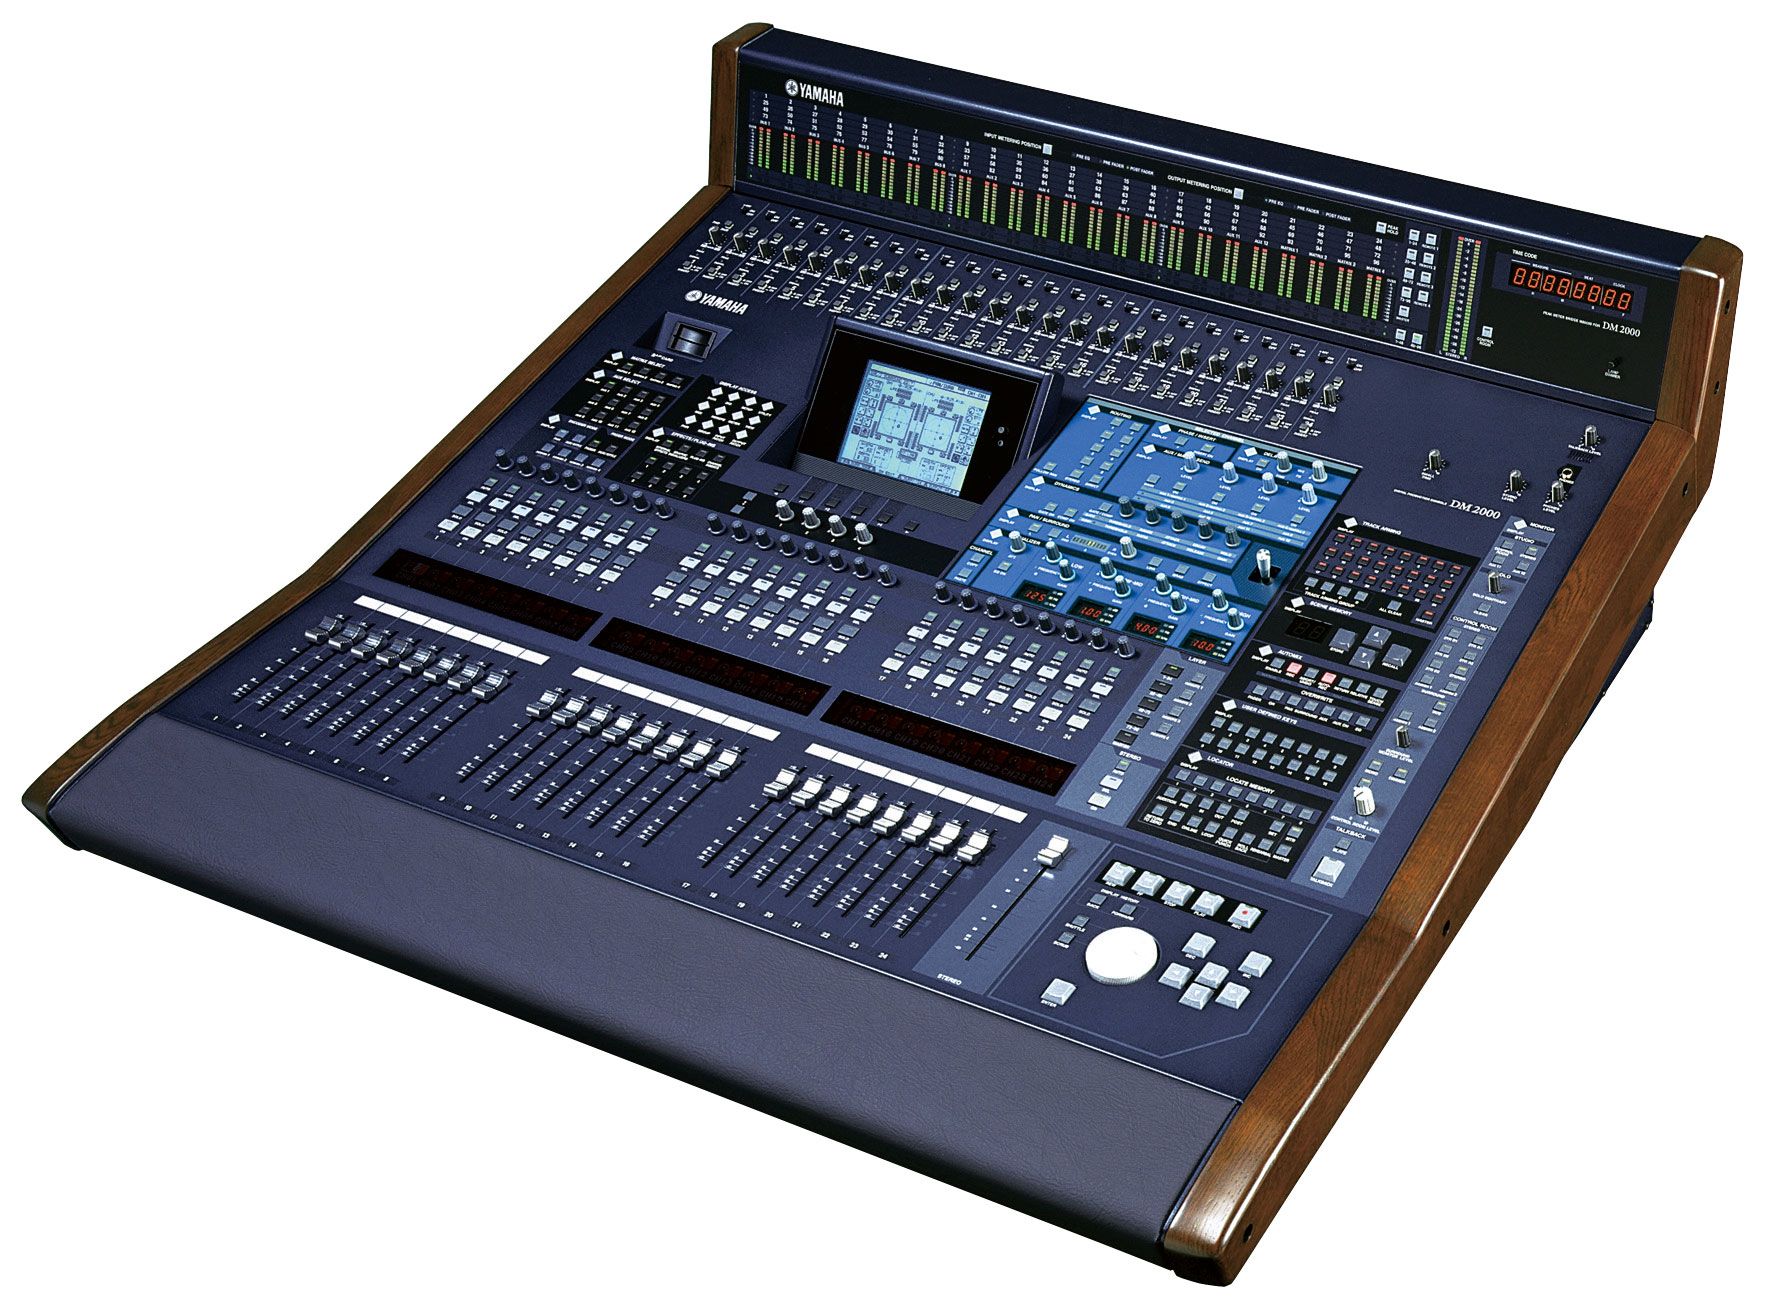 Mixer digital Yamaha DM2000 VCM